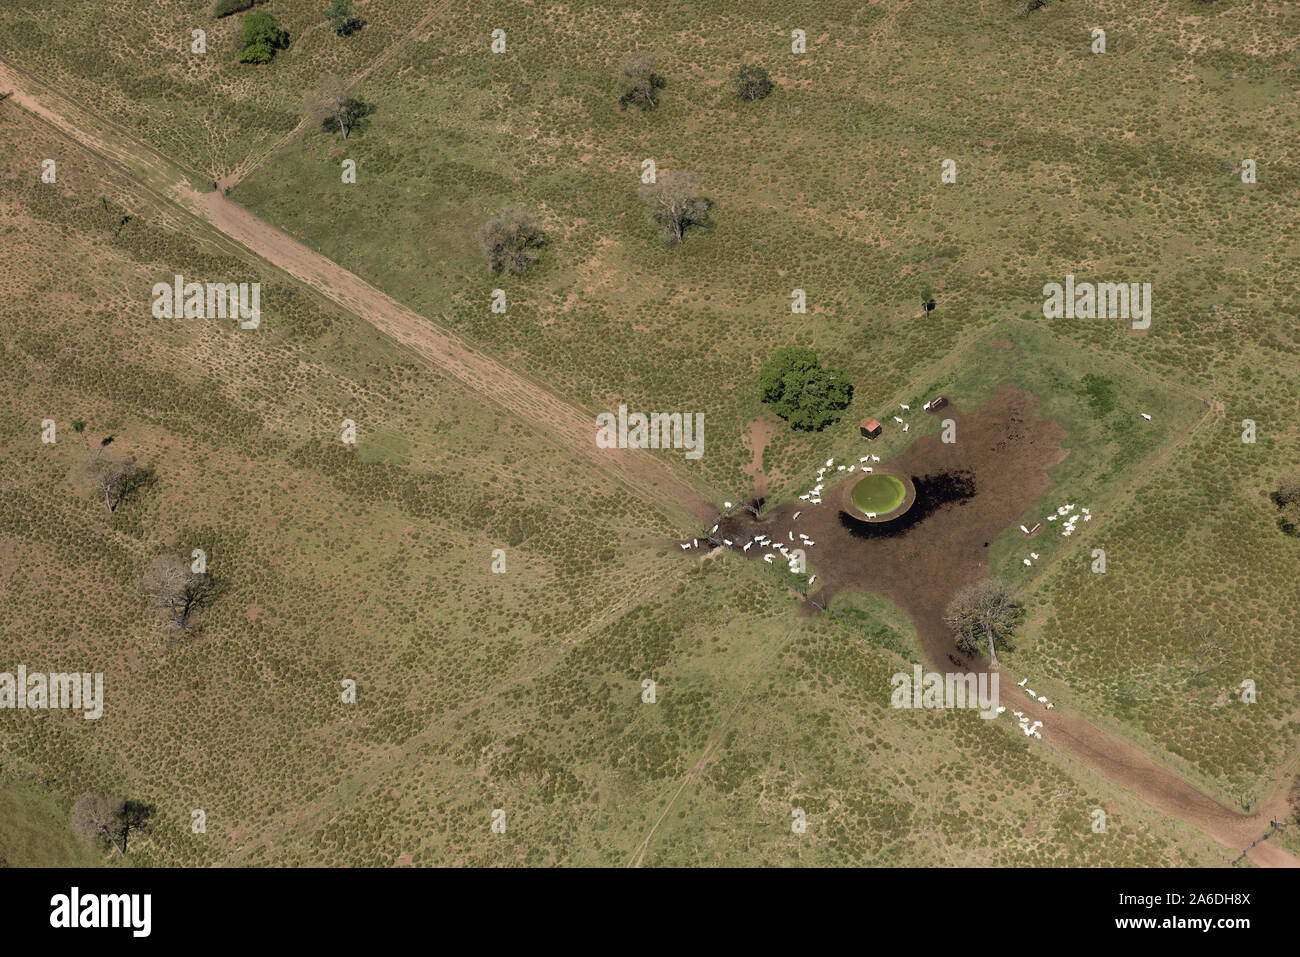 Aquidauana, Mato Grosso do Sul, Brésil - 31 août 2016 : Vue aérienne d'un troupeau autour d'un barrage sur le vaste champs verts des terres humides du Brésil (Pantanal) Banque D'Images